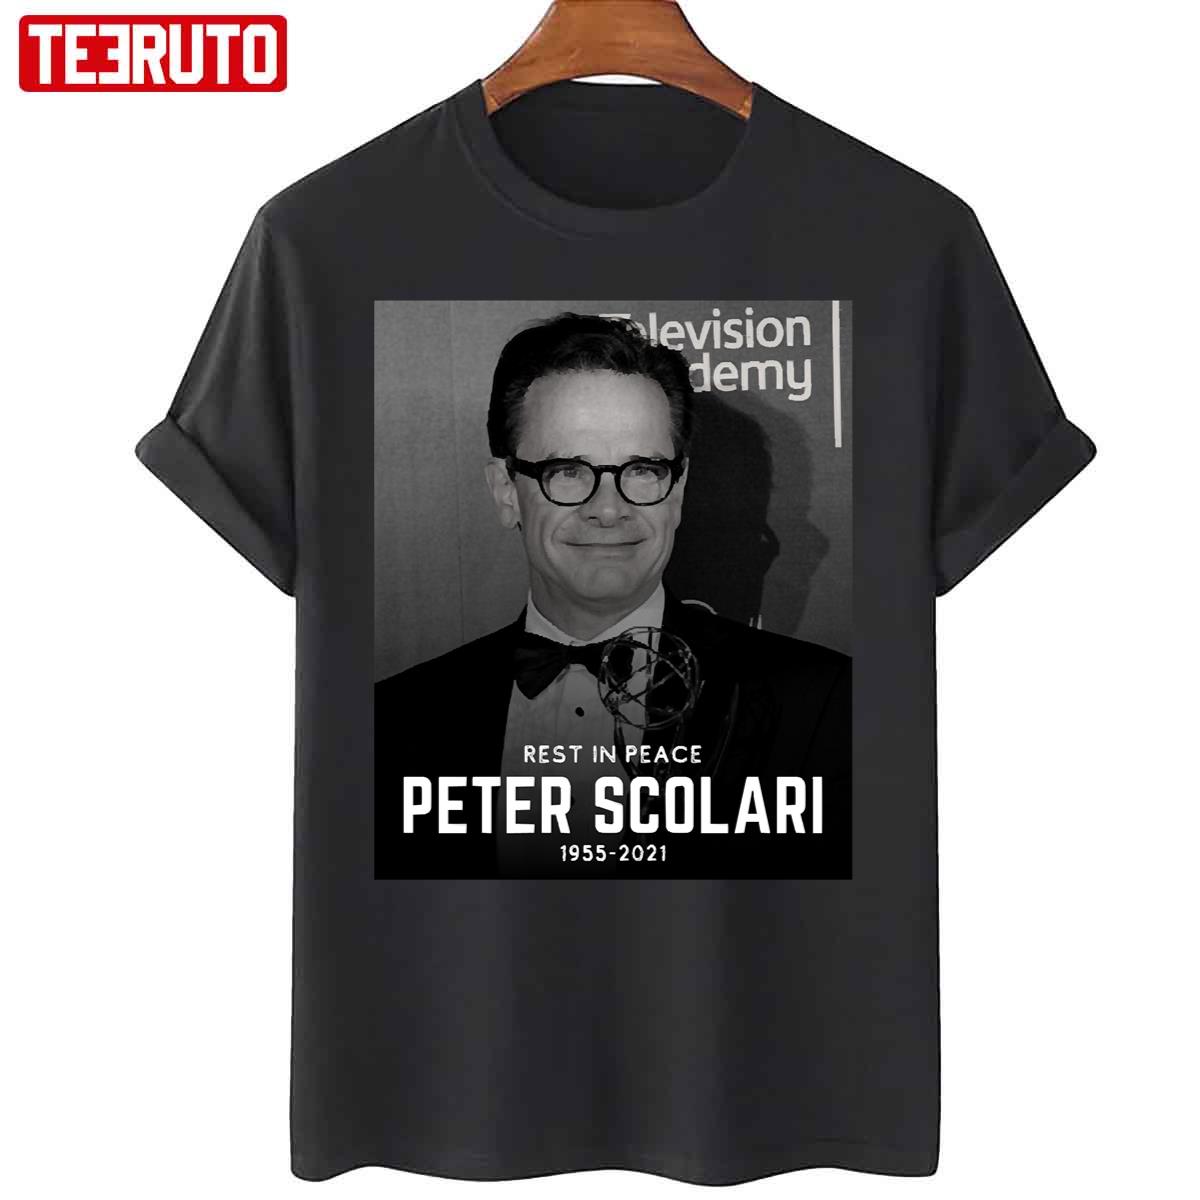 Peter Scolari RIP Rest In Peace Unisex T-Shirt